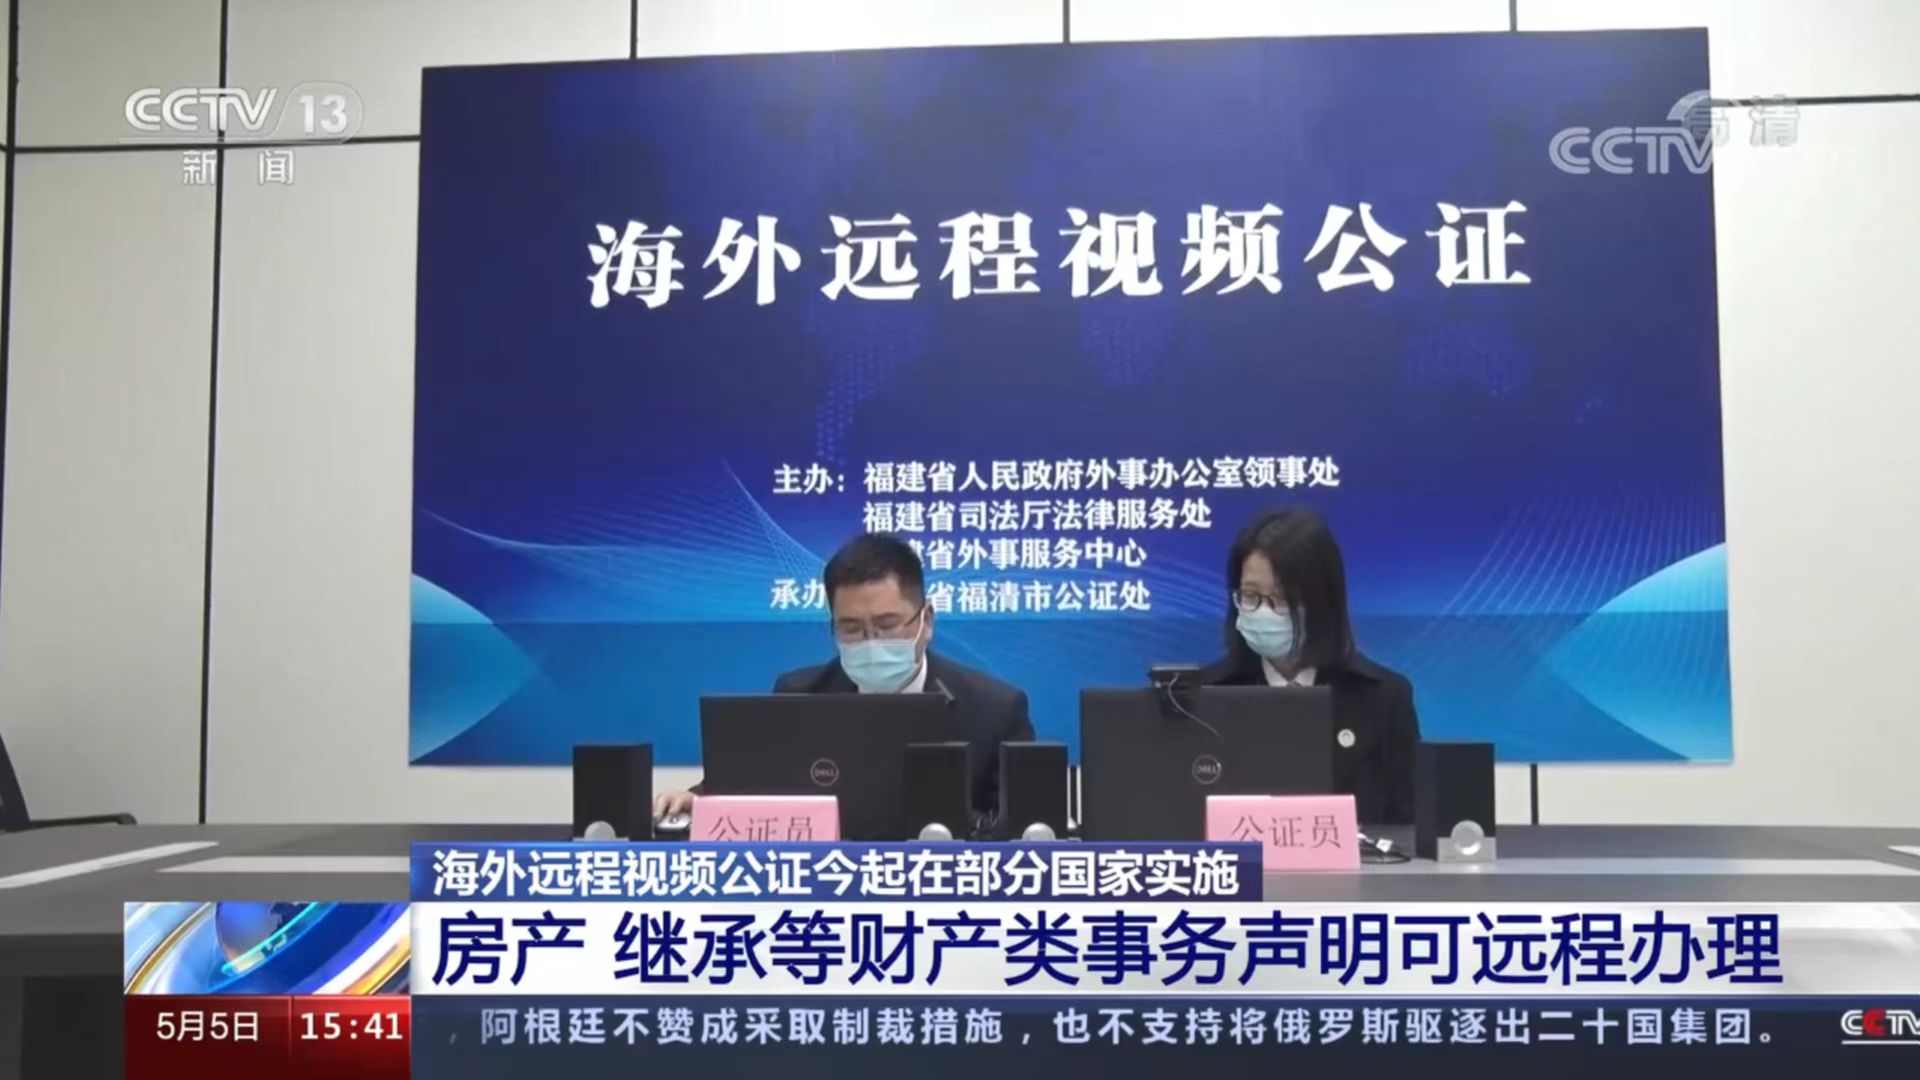 福清海外远程视频公证服务登上央视新闻